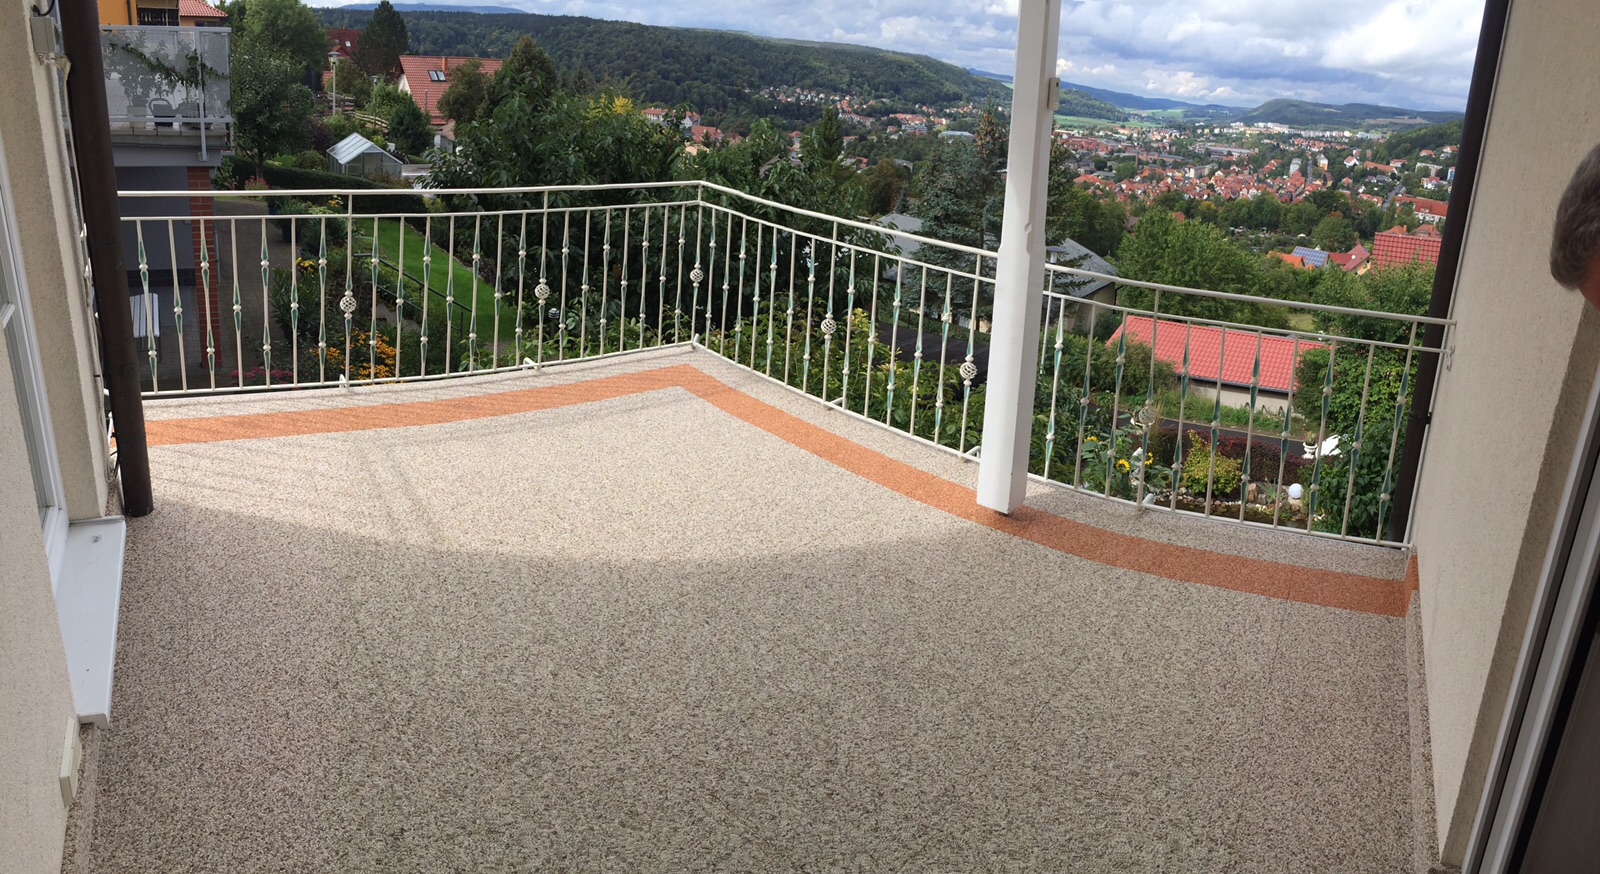 Balkonsanierung mit Steinteppich in Meiningen mit Blick auf´s Werratal